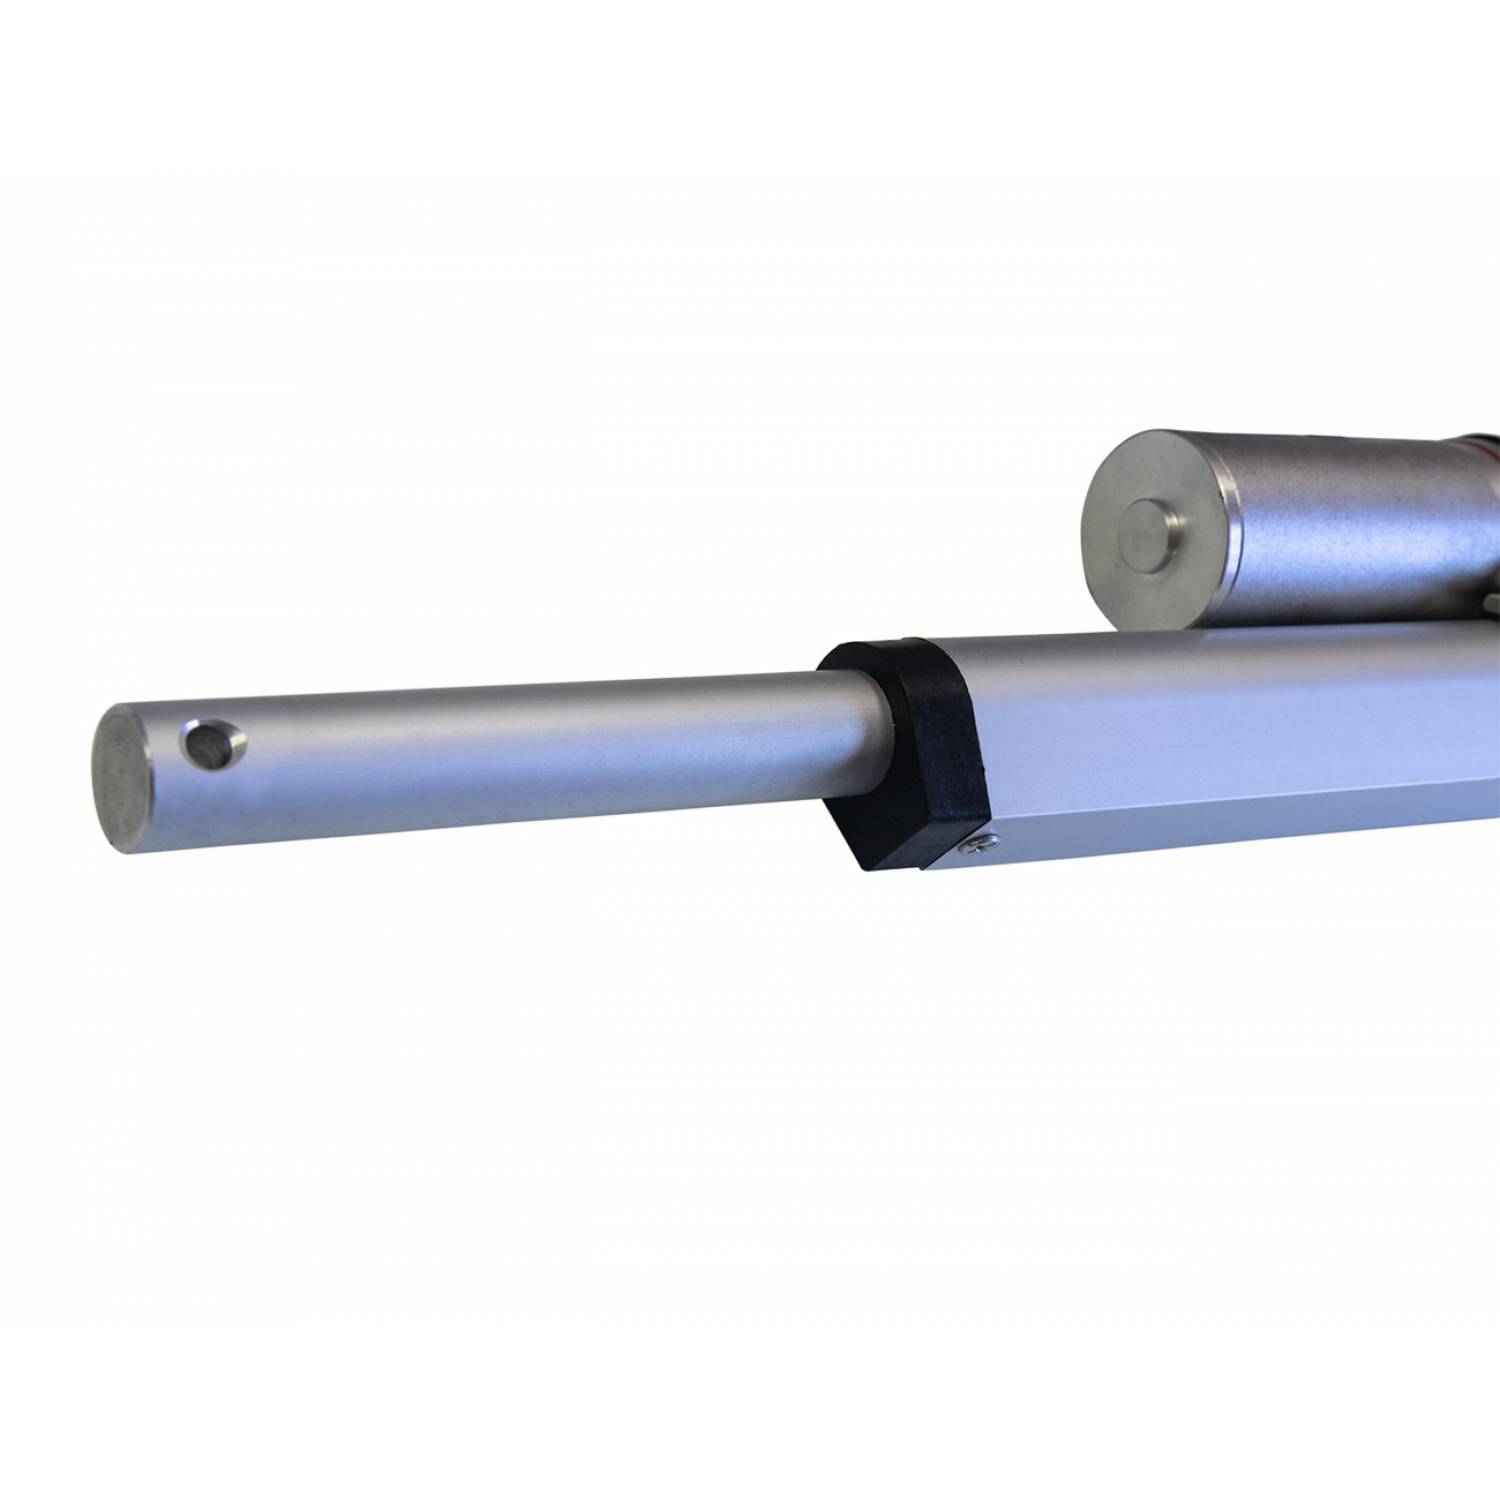 Актуатор (линейный привод) длина 50 мм, питание 12 вольт , нагрузка до 130 кг, скорость 7 мм/сек